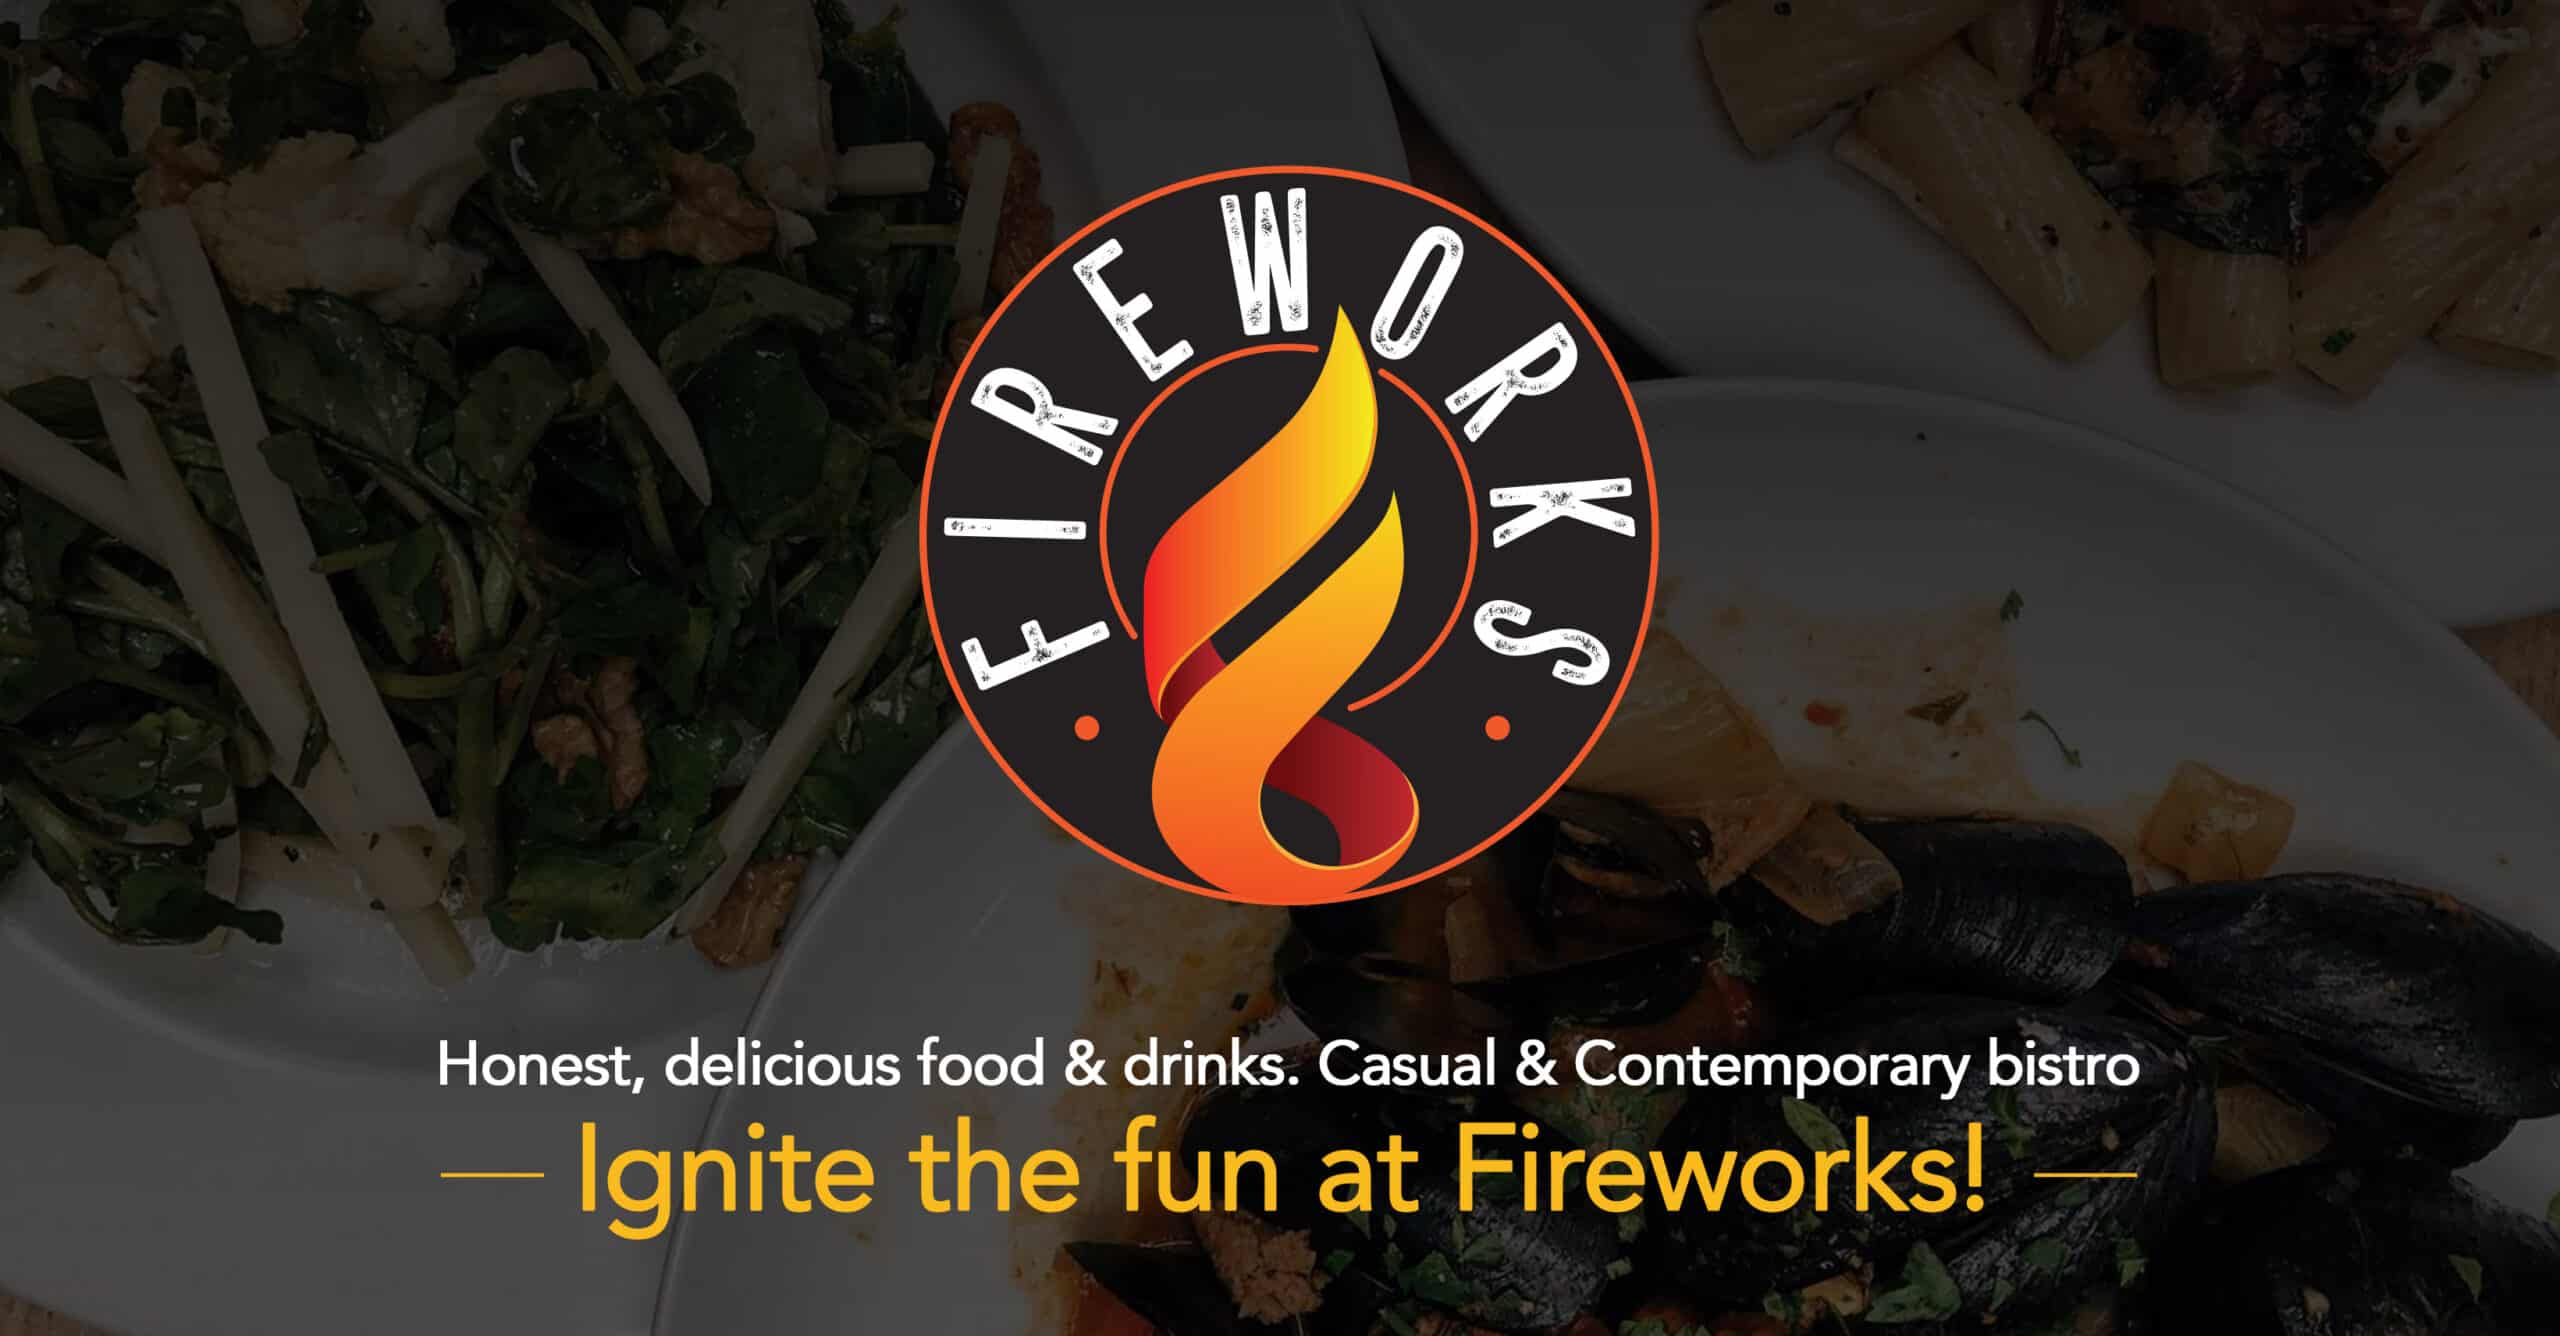 Fireworks Restaurant Keene NH — Ignite the fun at Fireworks!